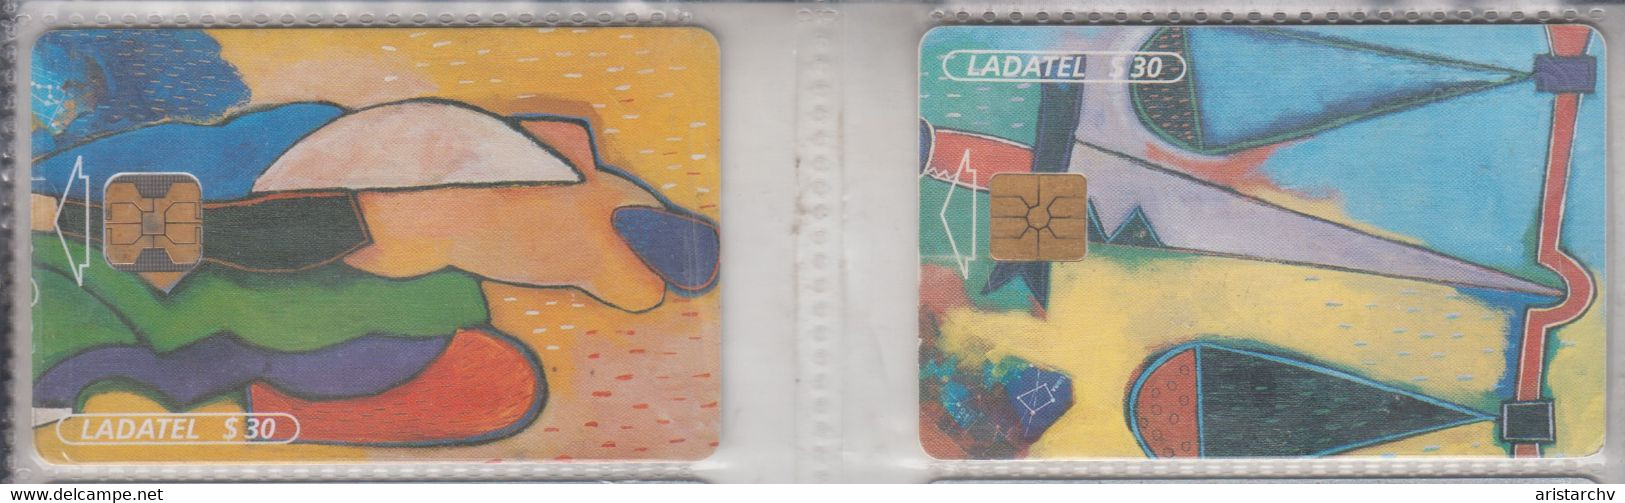 MEXICO 2000 ZODIAC HOROSCOPE LUNAR CALENDAR SET OF 12 PHONE CARDS - Zodiaque